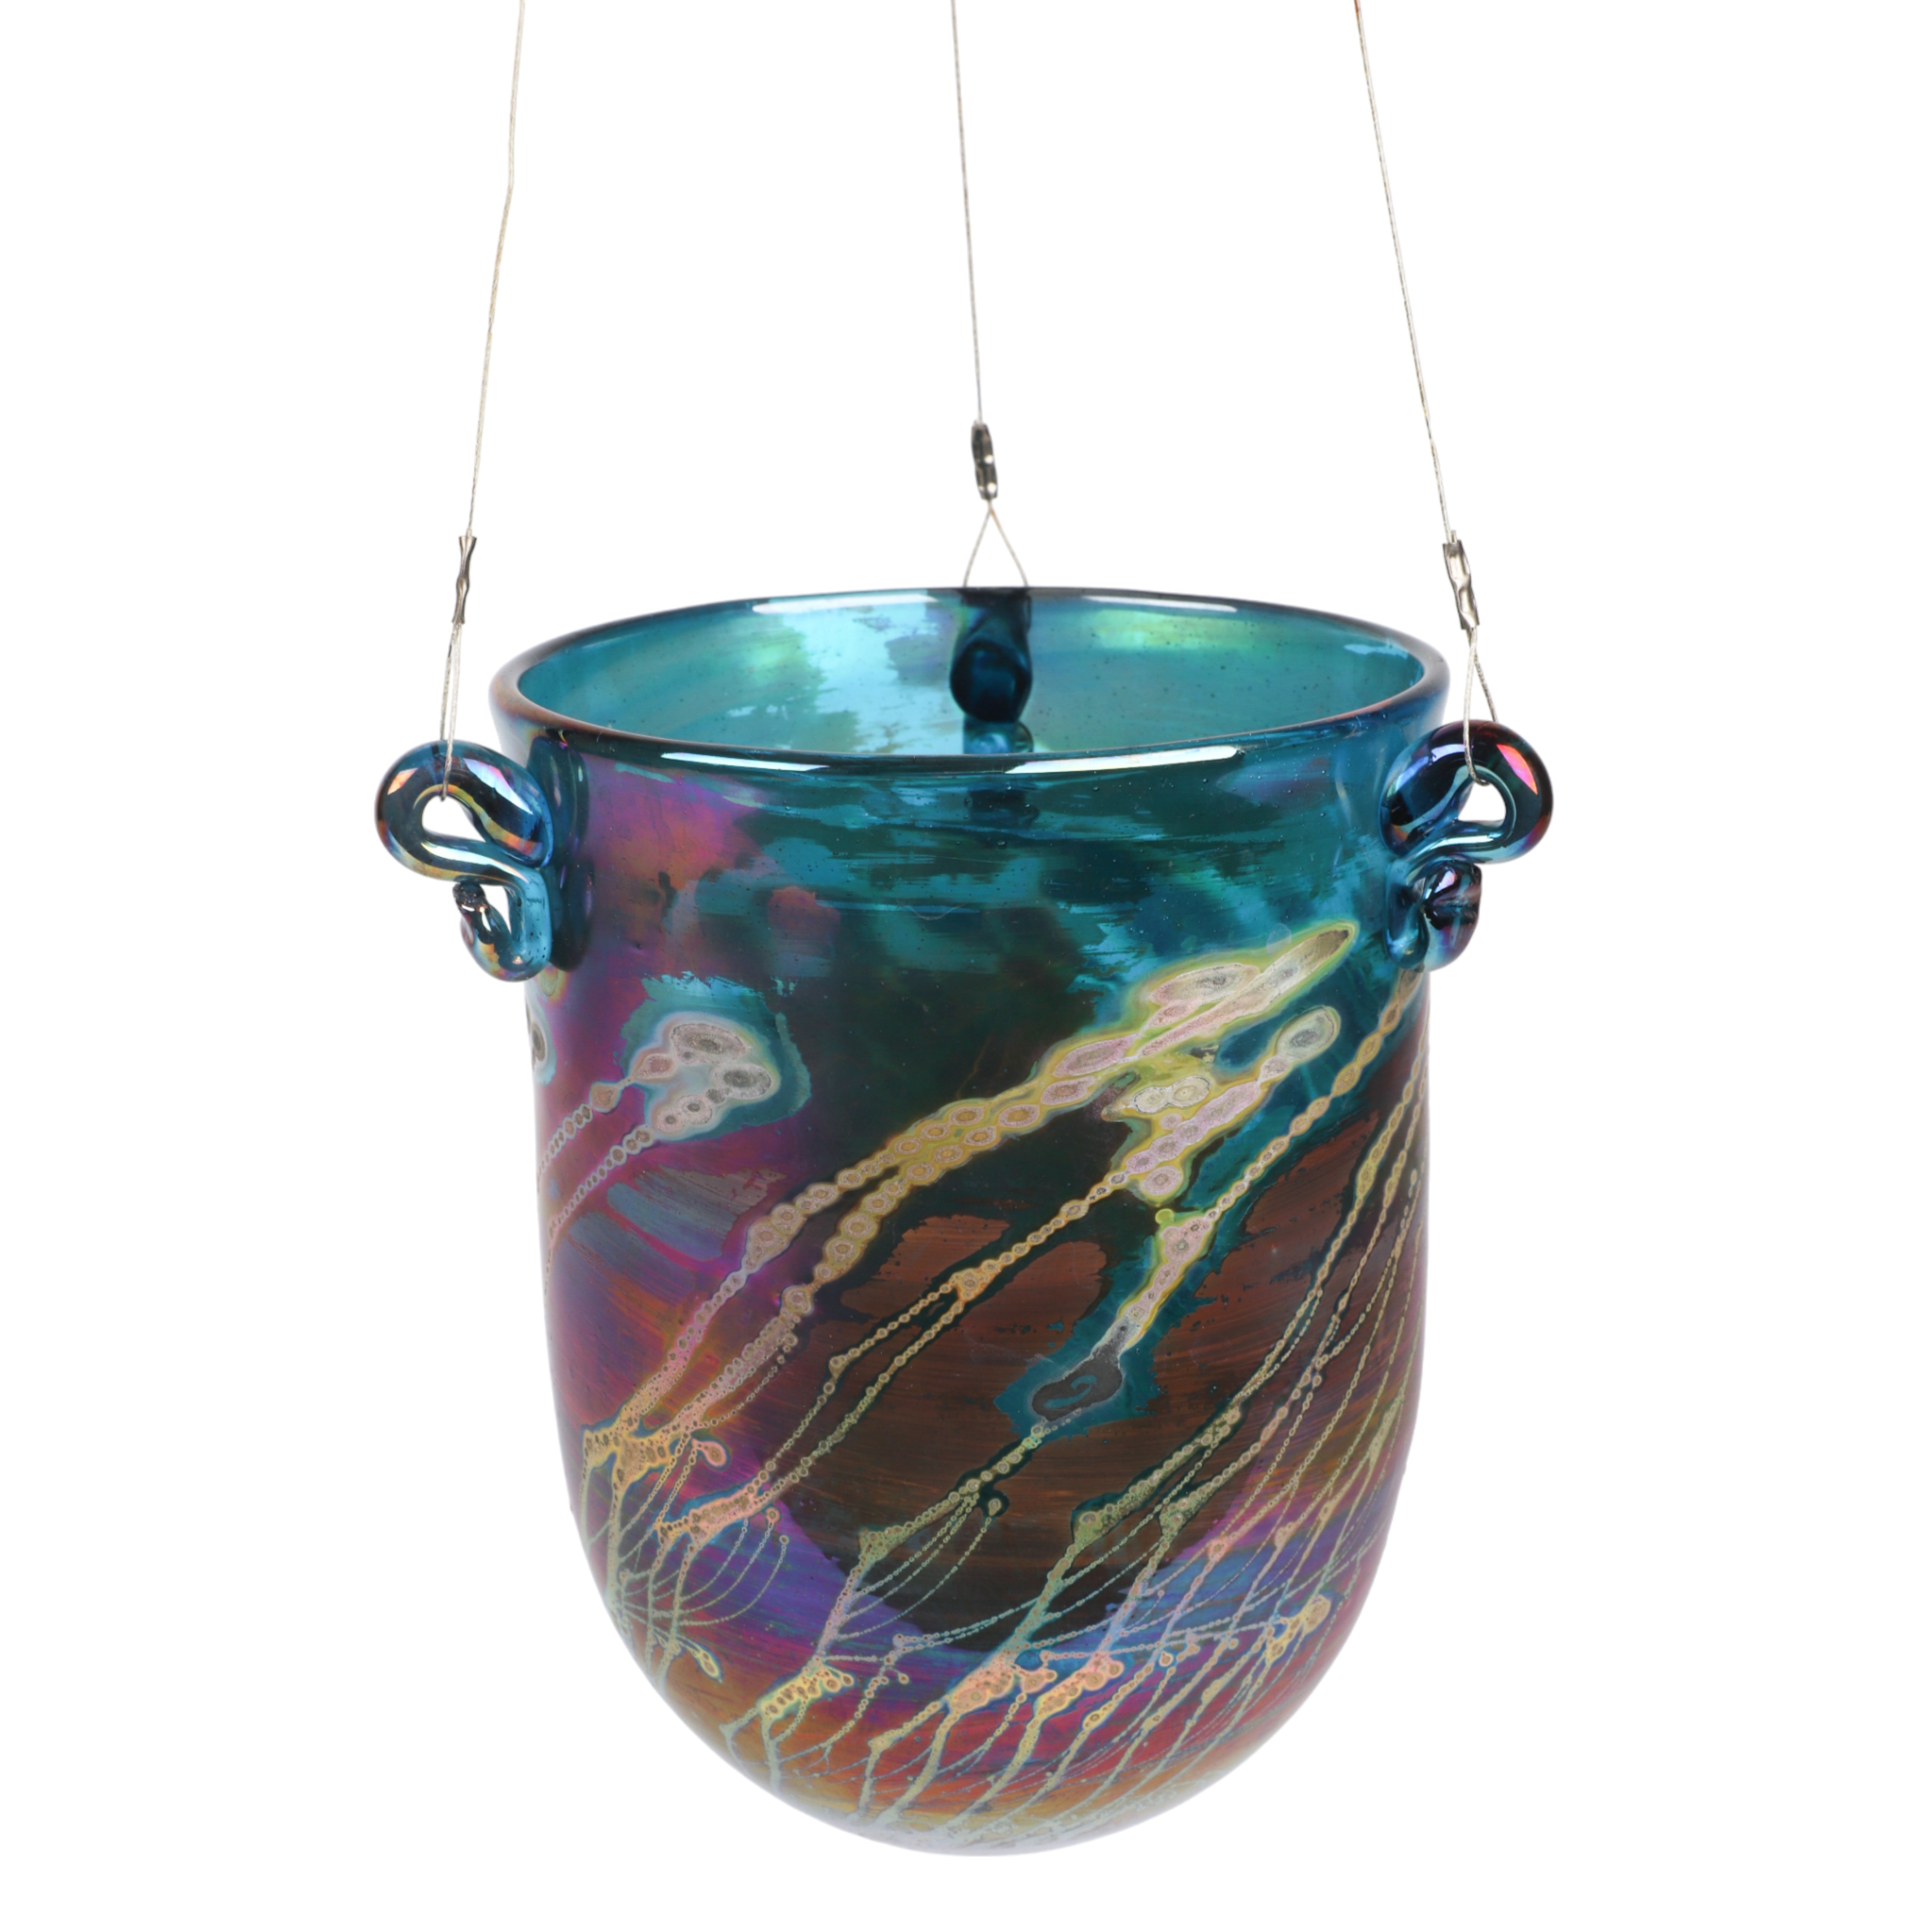 Robert Coleman art glass suspended